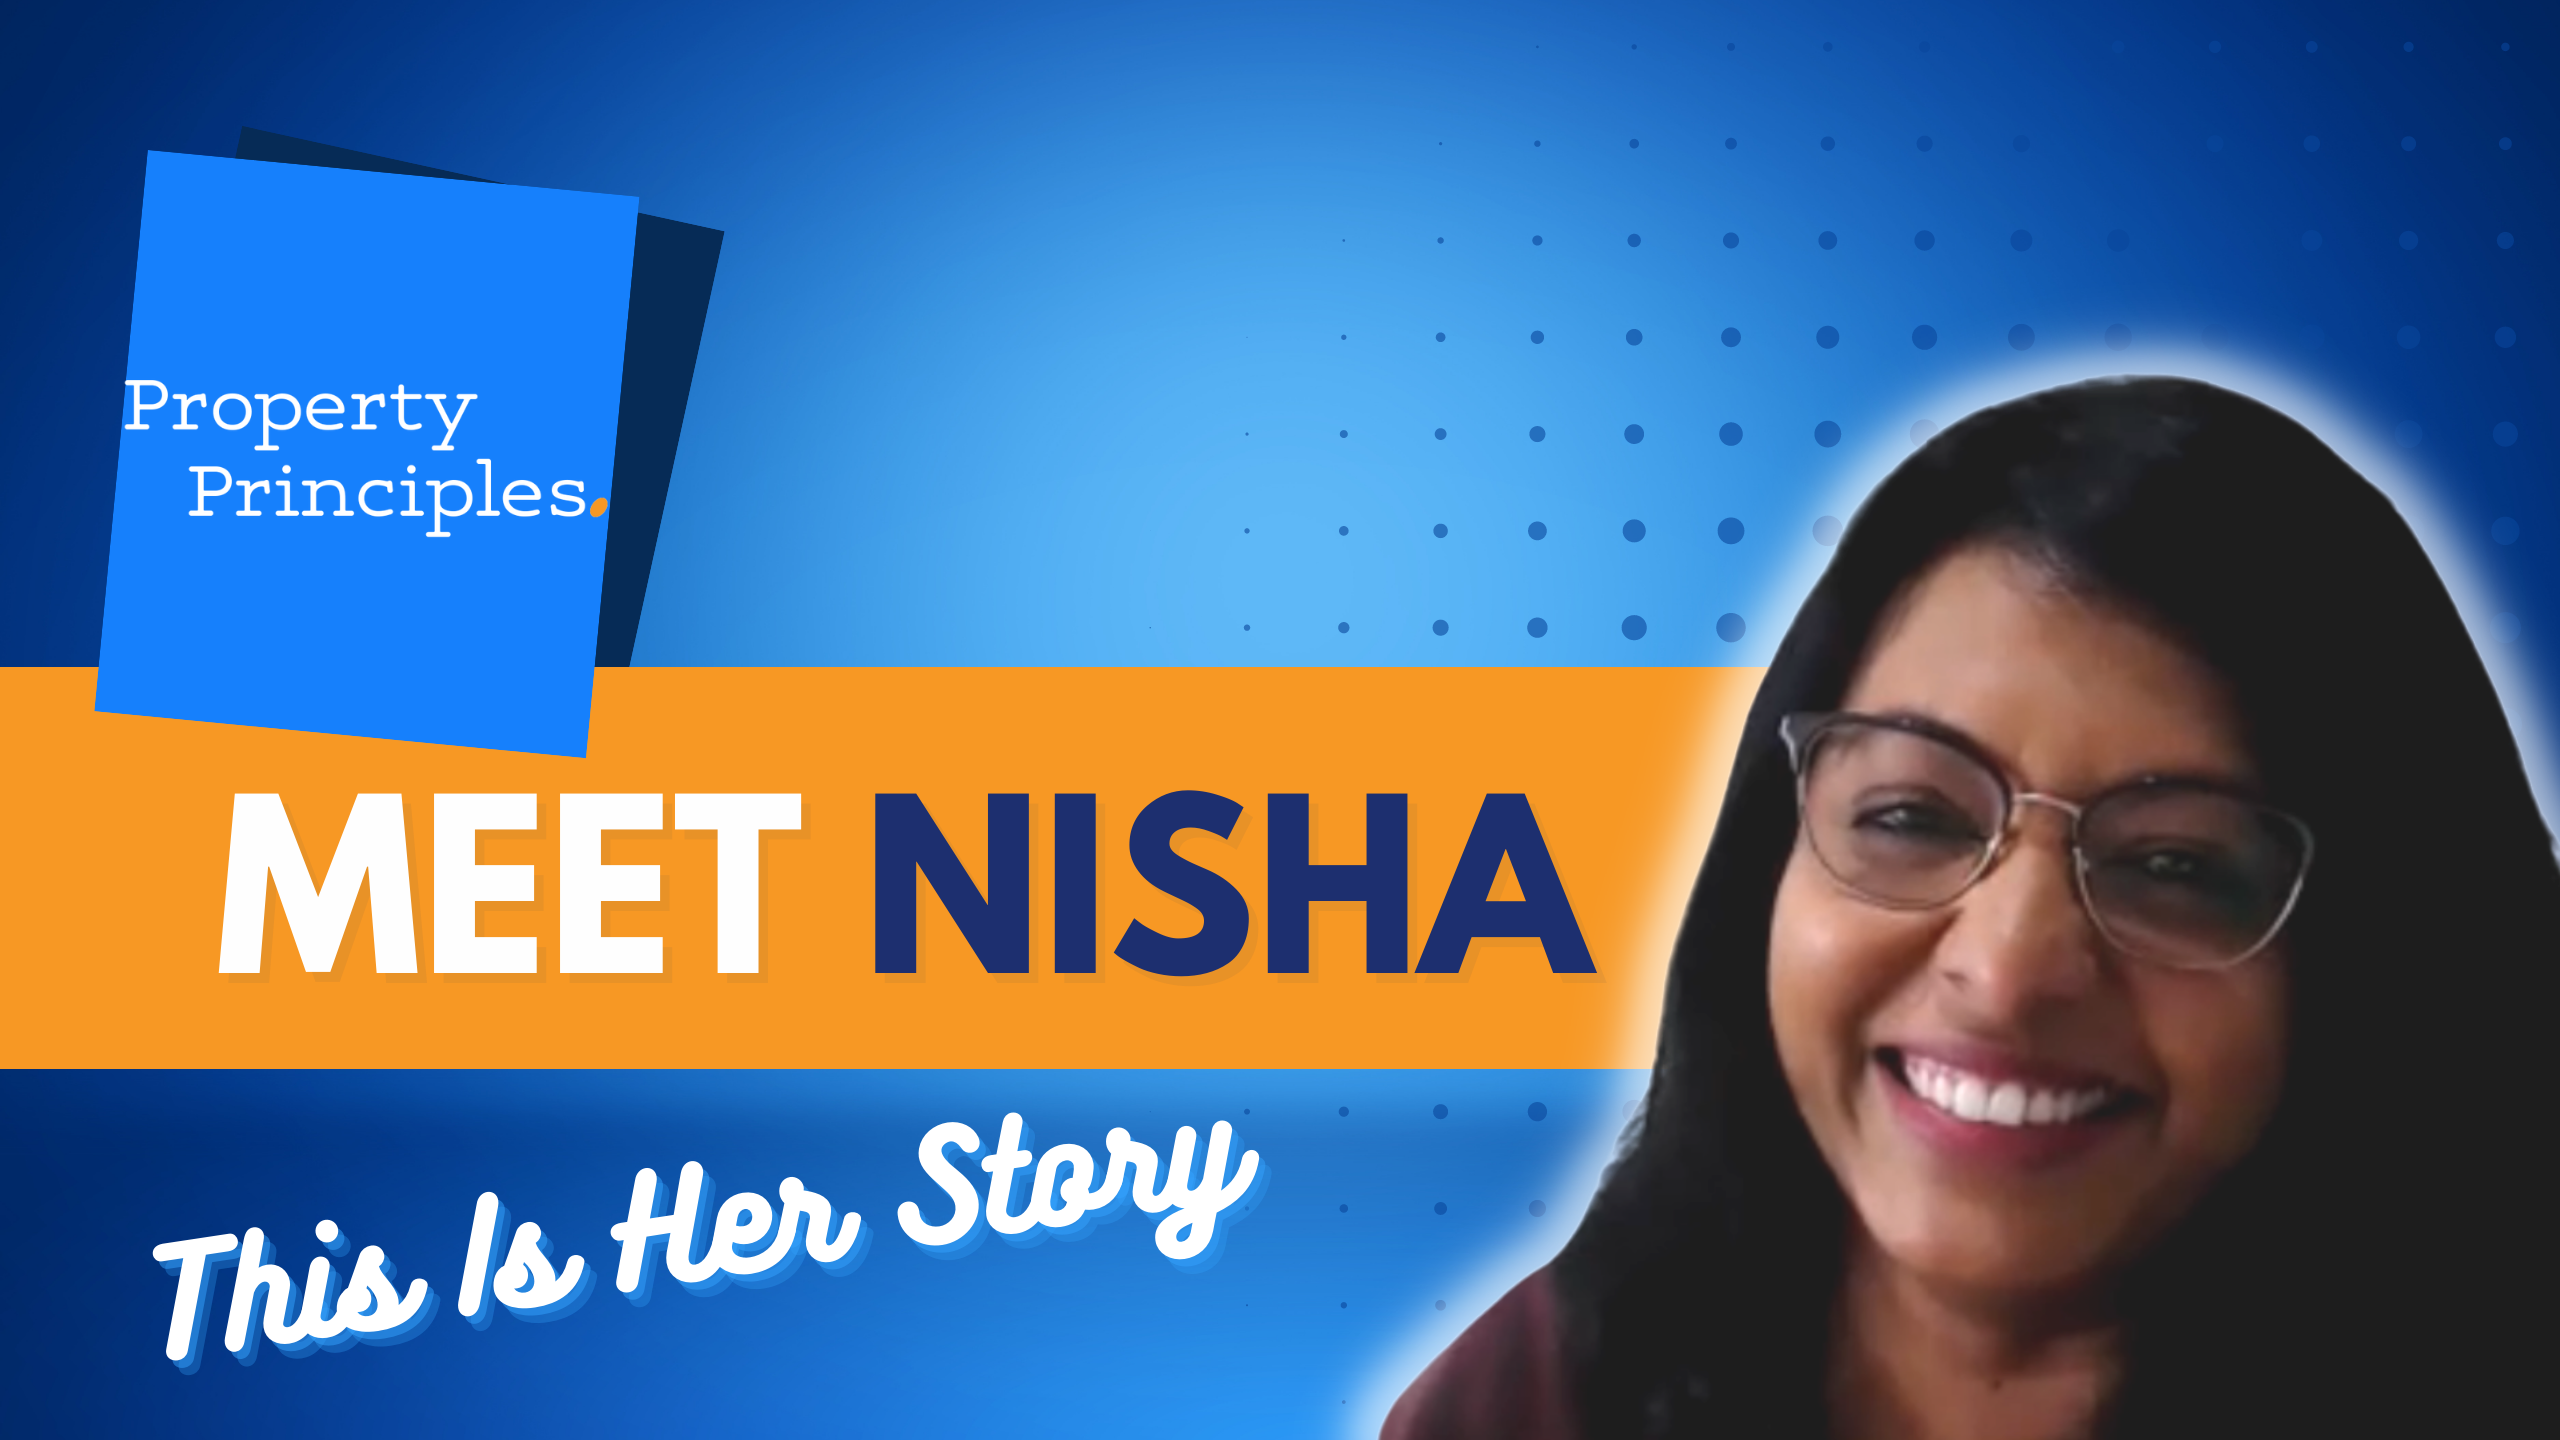 Nisha and Her Story